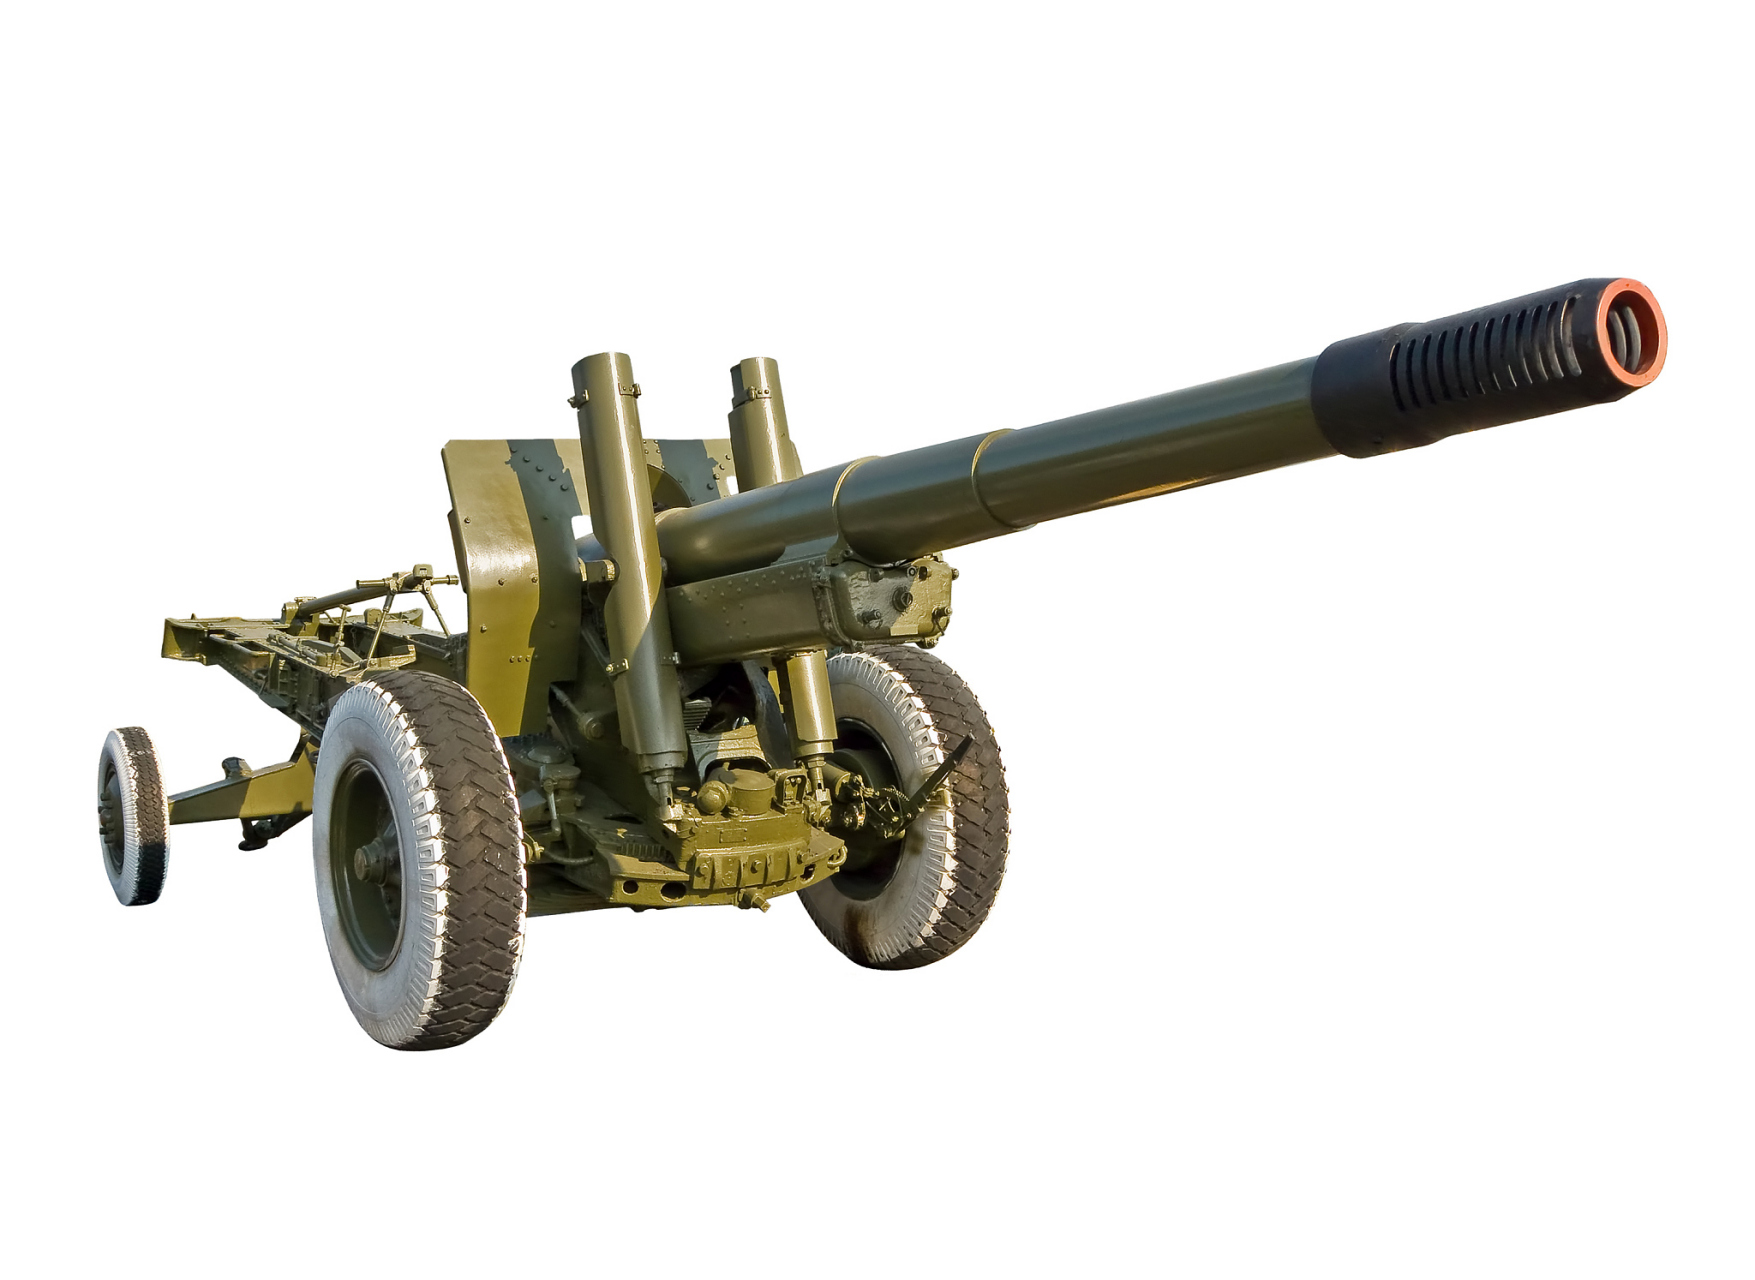 大和魂240毫米榴弹炮图片